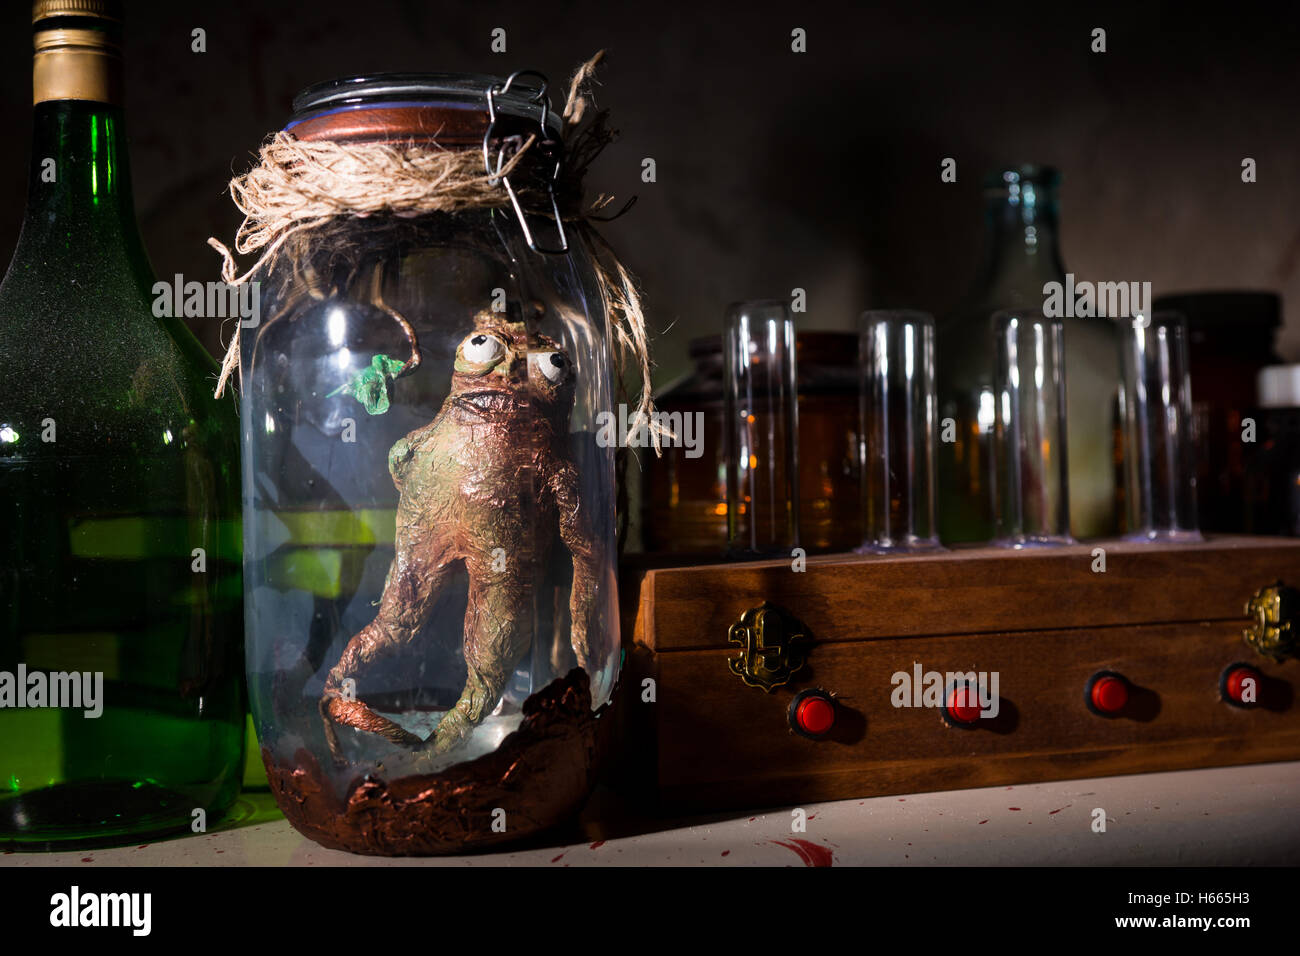 Criatura muerta con los ojos saltones dentro del frasco cerrado con una cuerda en una habitación oscura Foto de stock